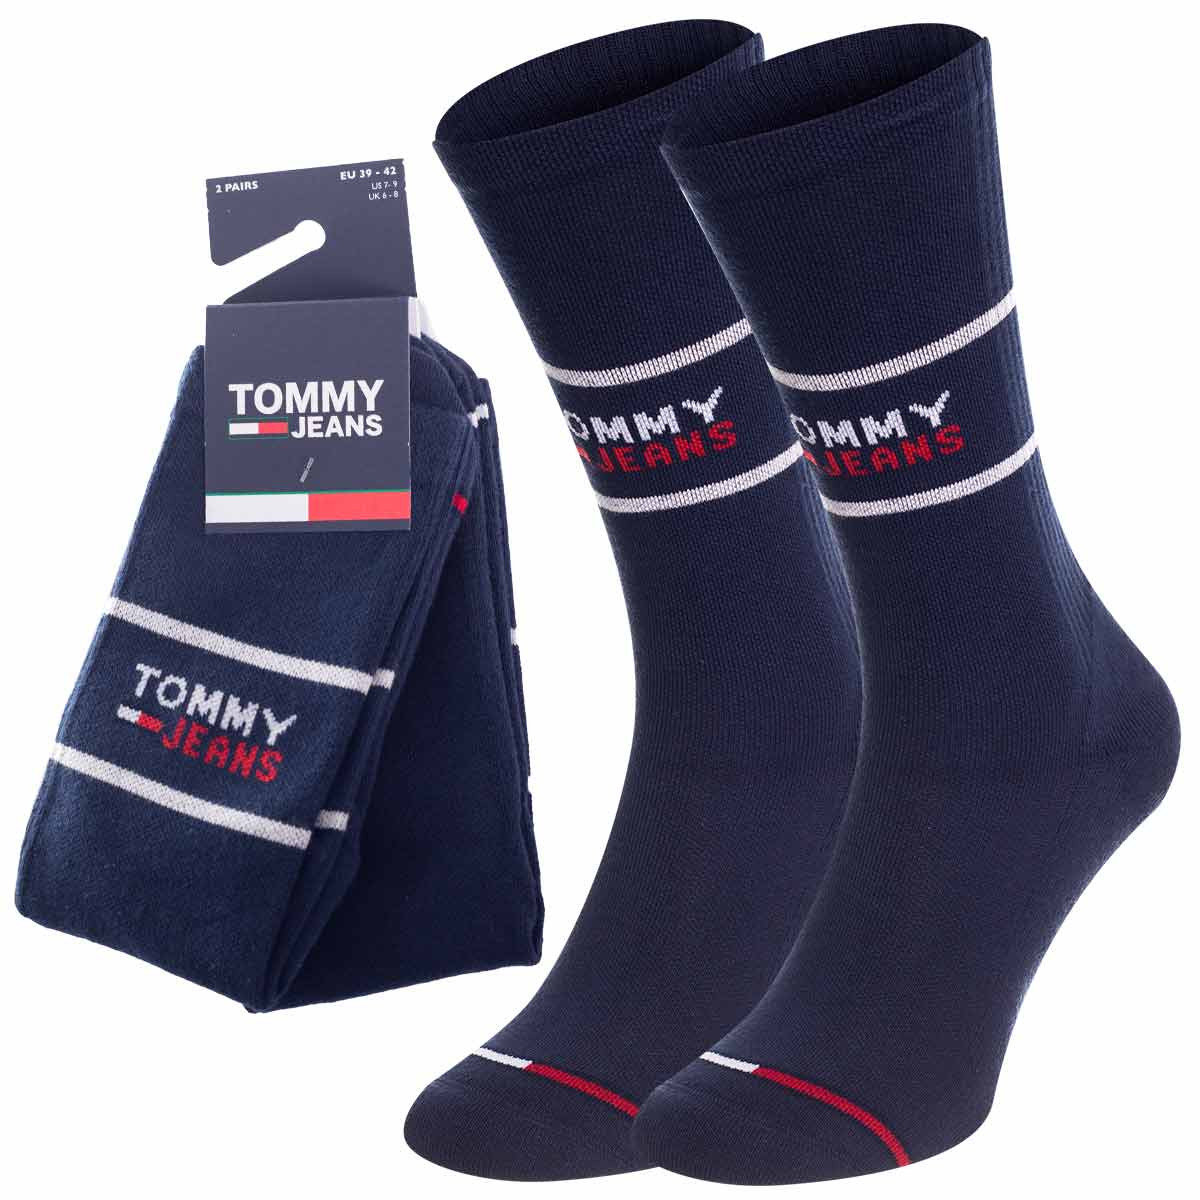 Ponožky Tommy Hilfiger Jeans 2Pack 701218704002 Navy Blue 43-46